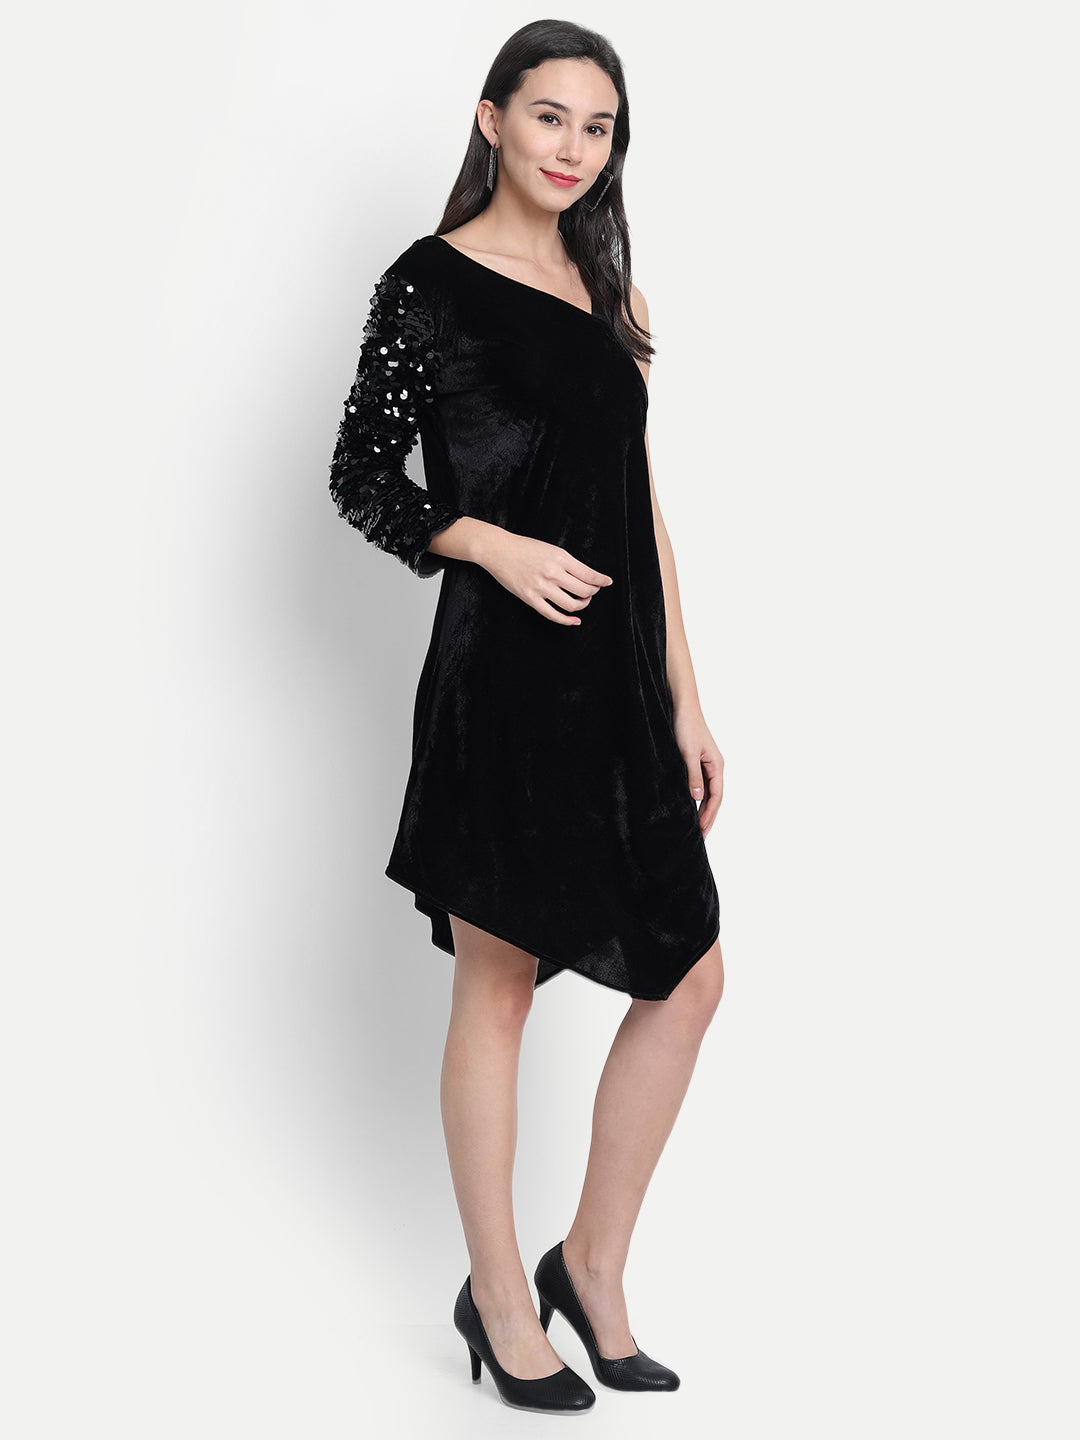 LY2 Elegant one shoulder strap black sequins dress